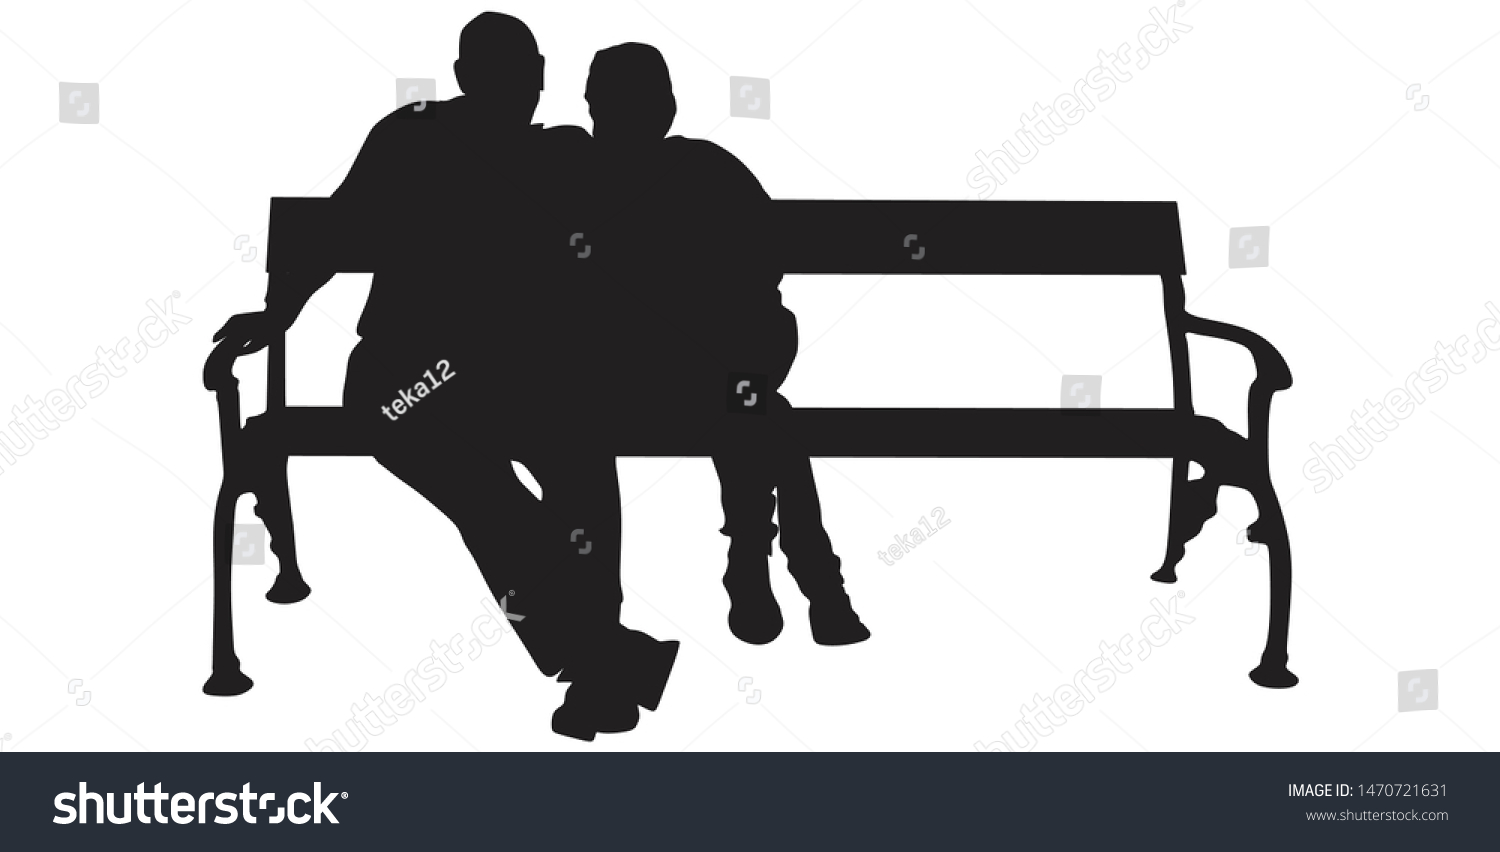 ベンチに座っているカップルのシルエットイラスト のベクター画像素材 ロイヤリティフリー